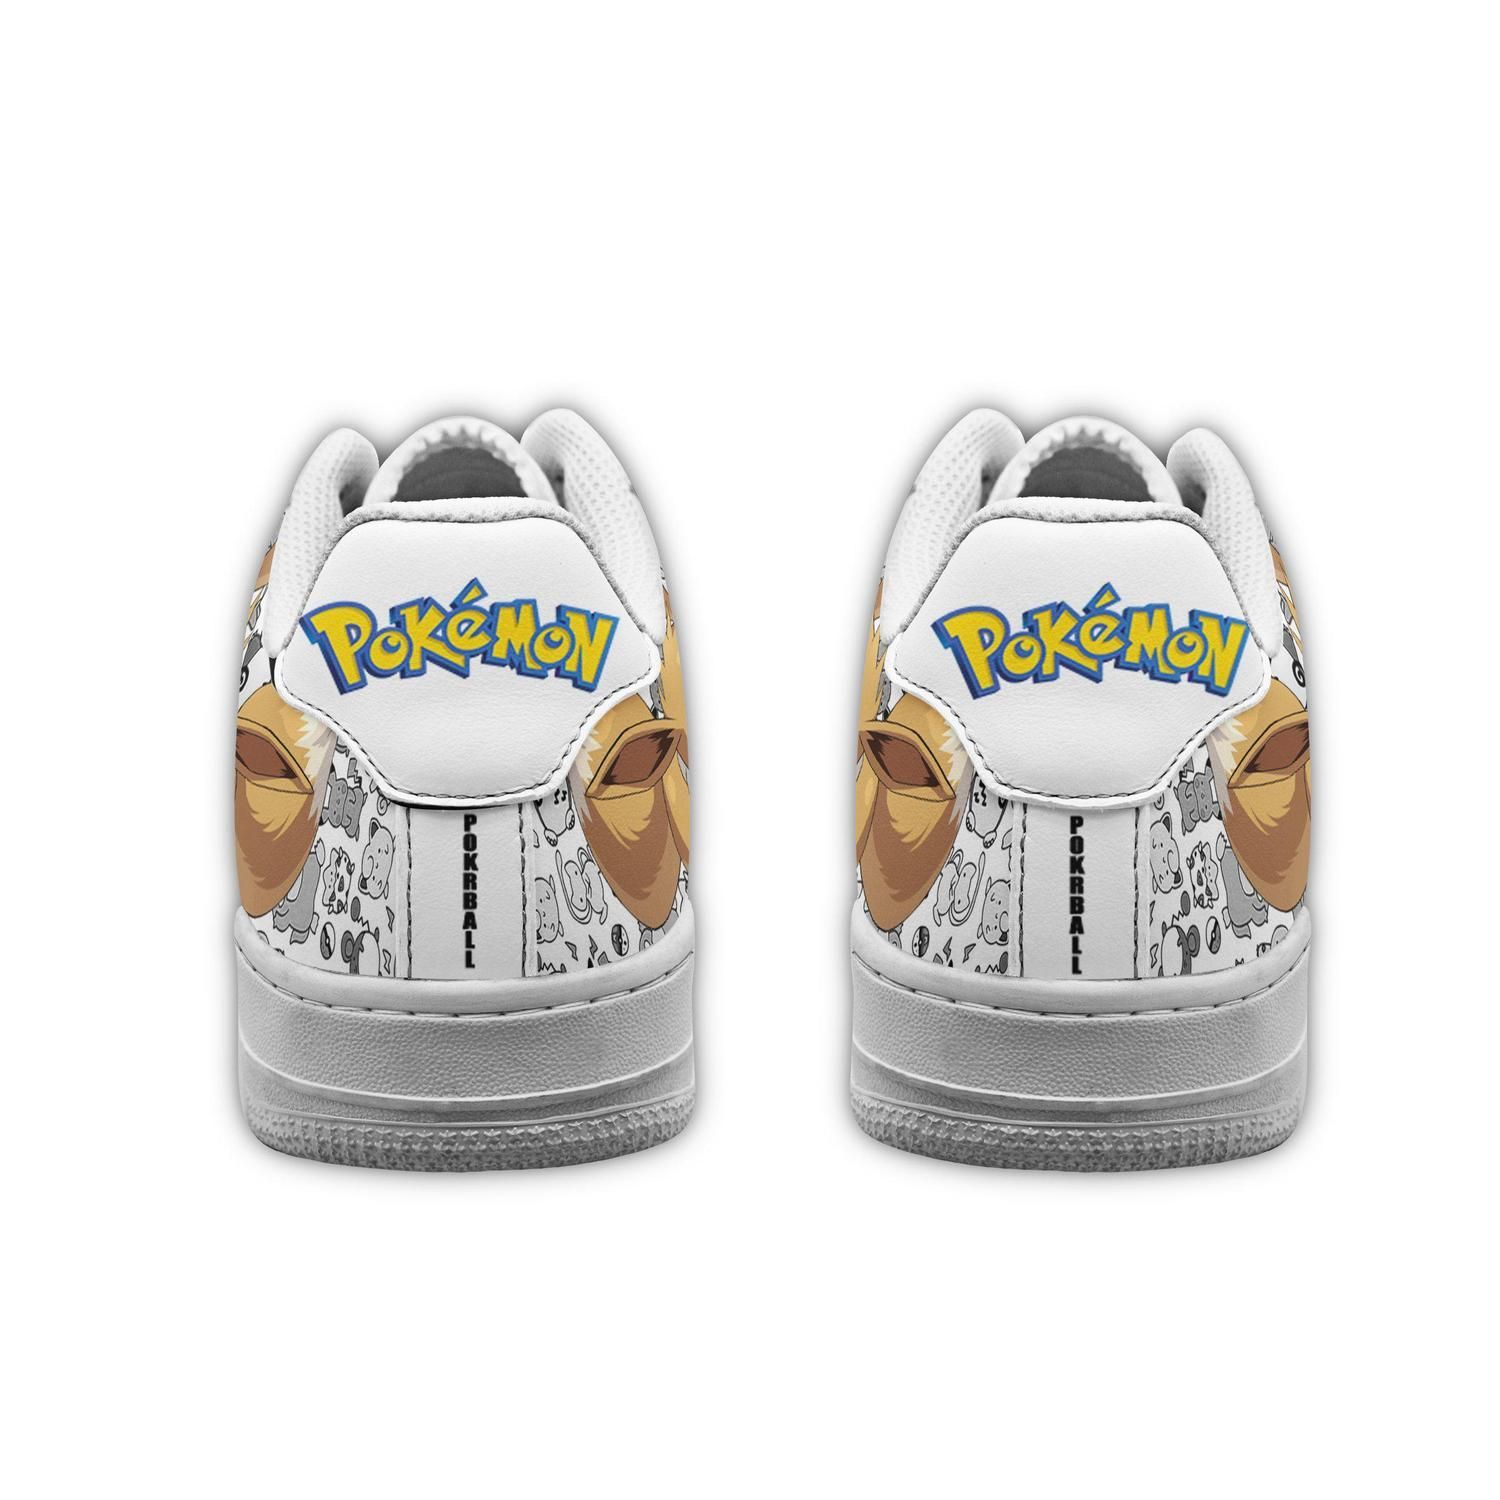 Eevee Pokemon Air Force 1 Low Top Shoes Sneakers